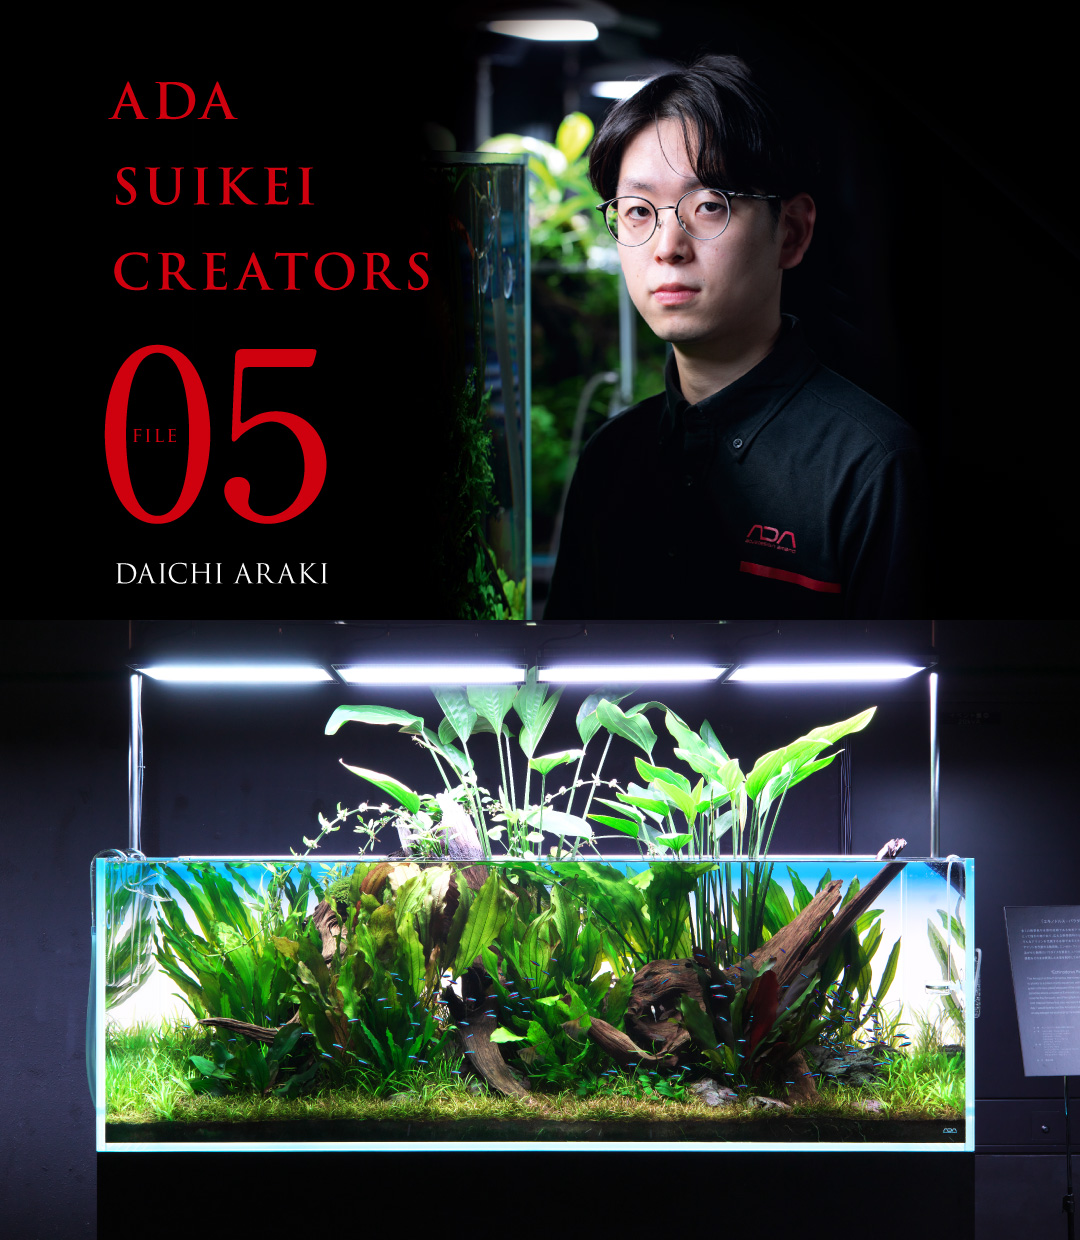 ADA SUIKEI CREATORS #05 Daichi Araki